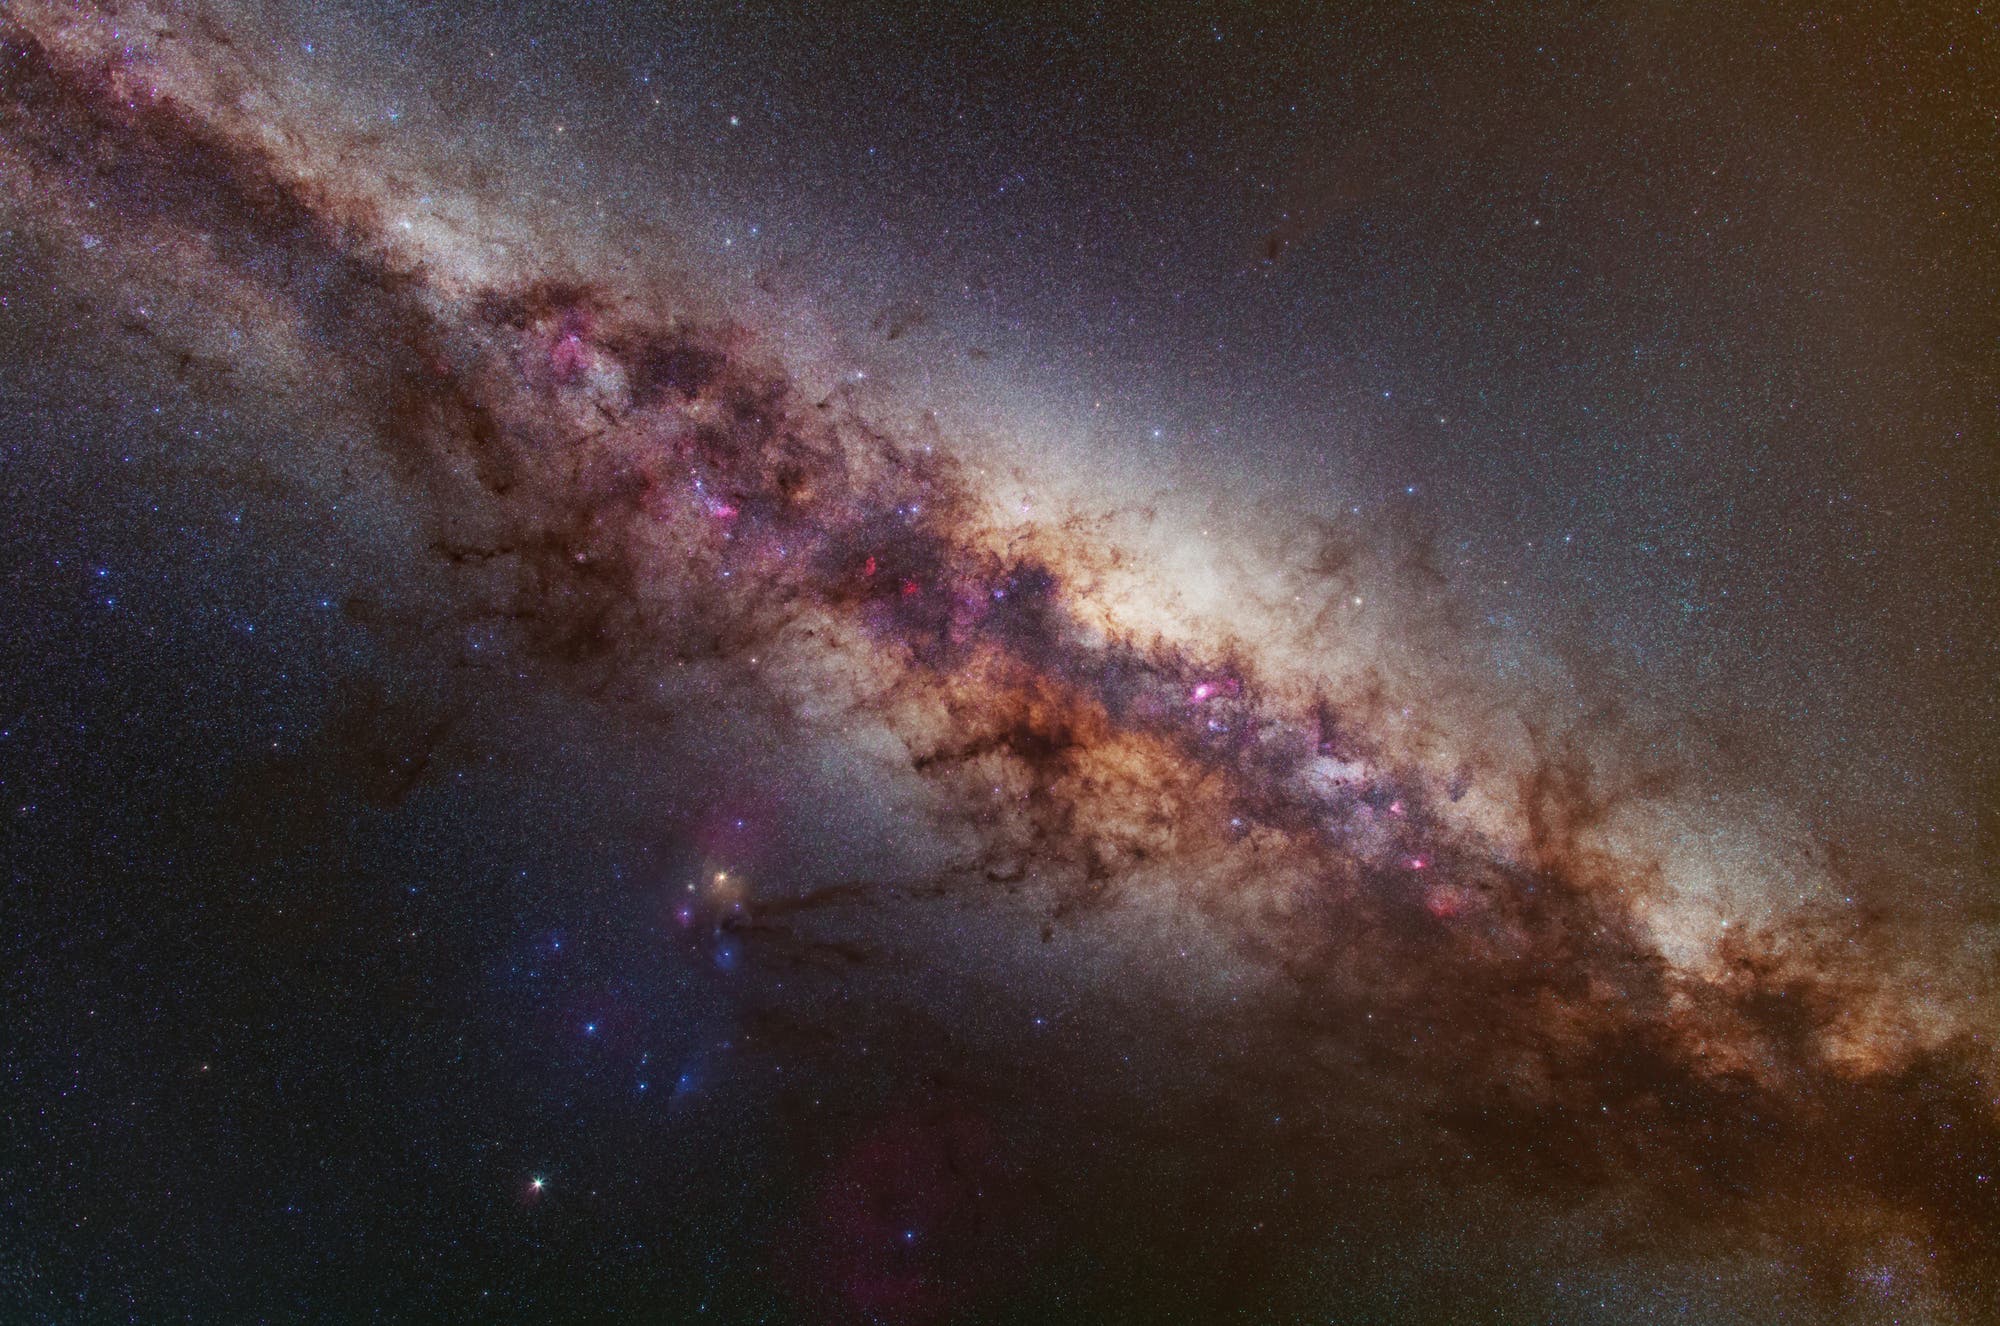 Das Zentrum der Milchstraße